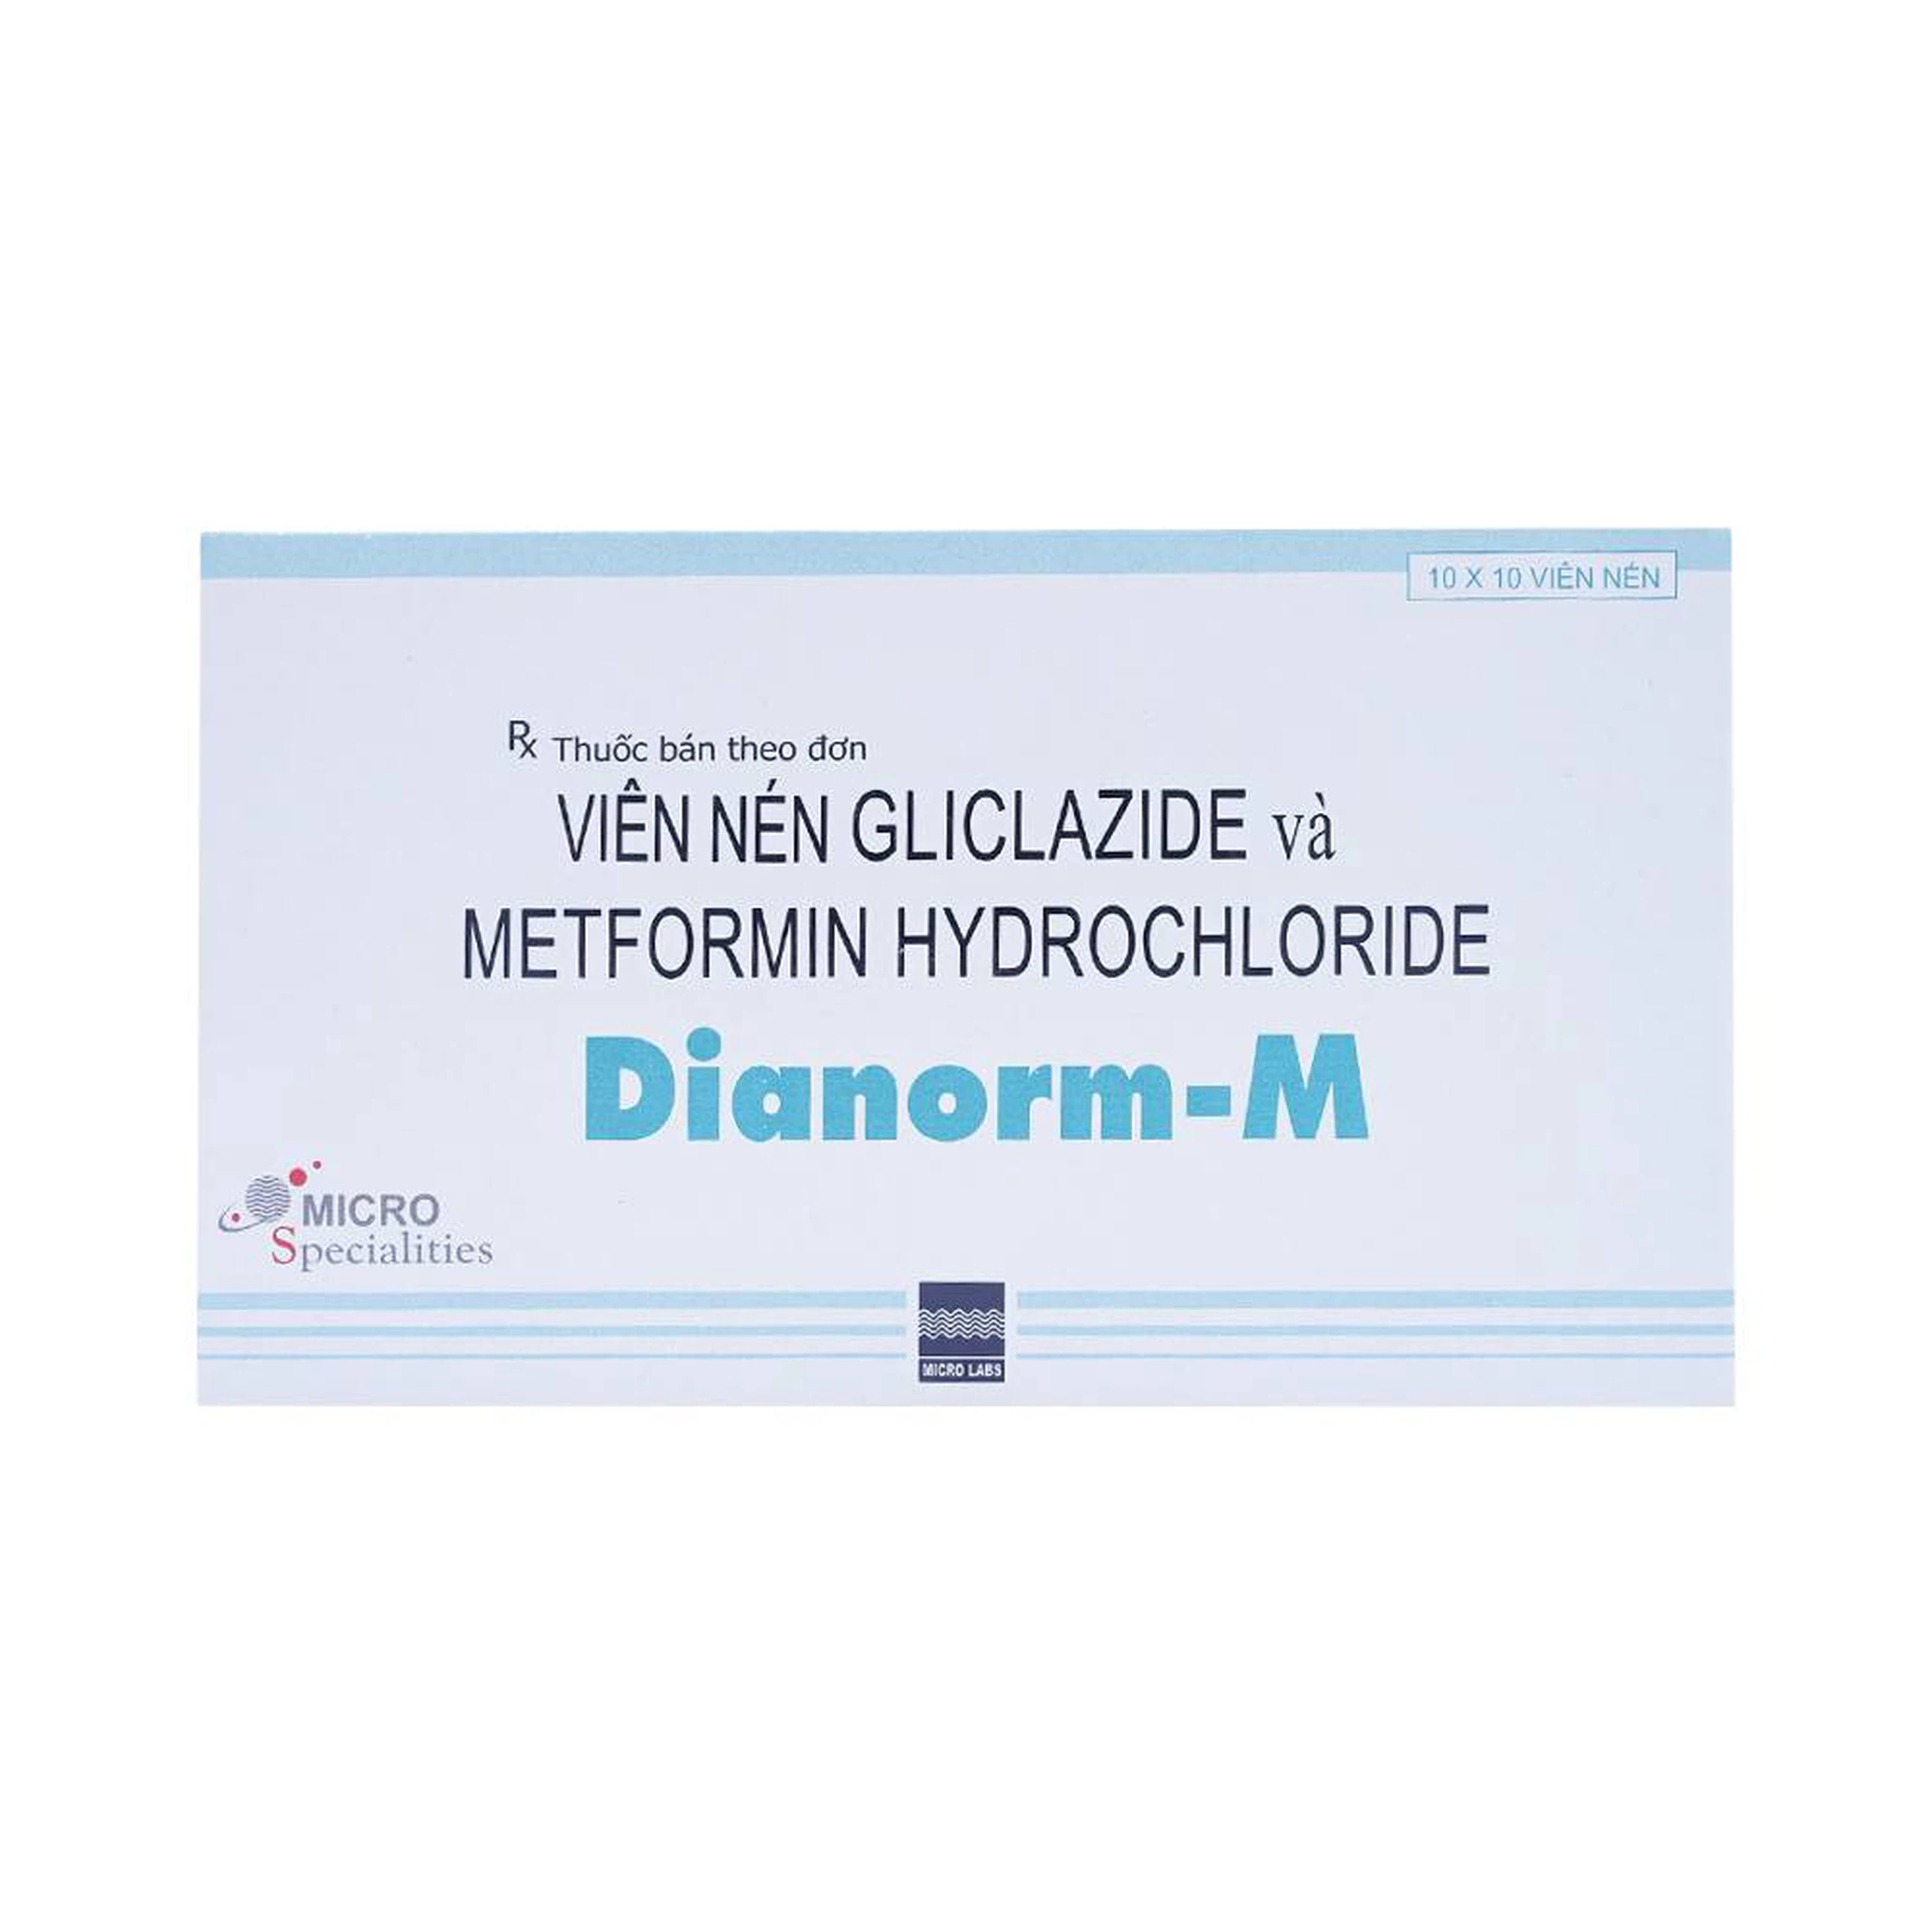 Thuốc Dianorm-M Micro điều trị đái tháo đường (10 vỉ x 10 viên)